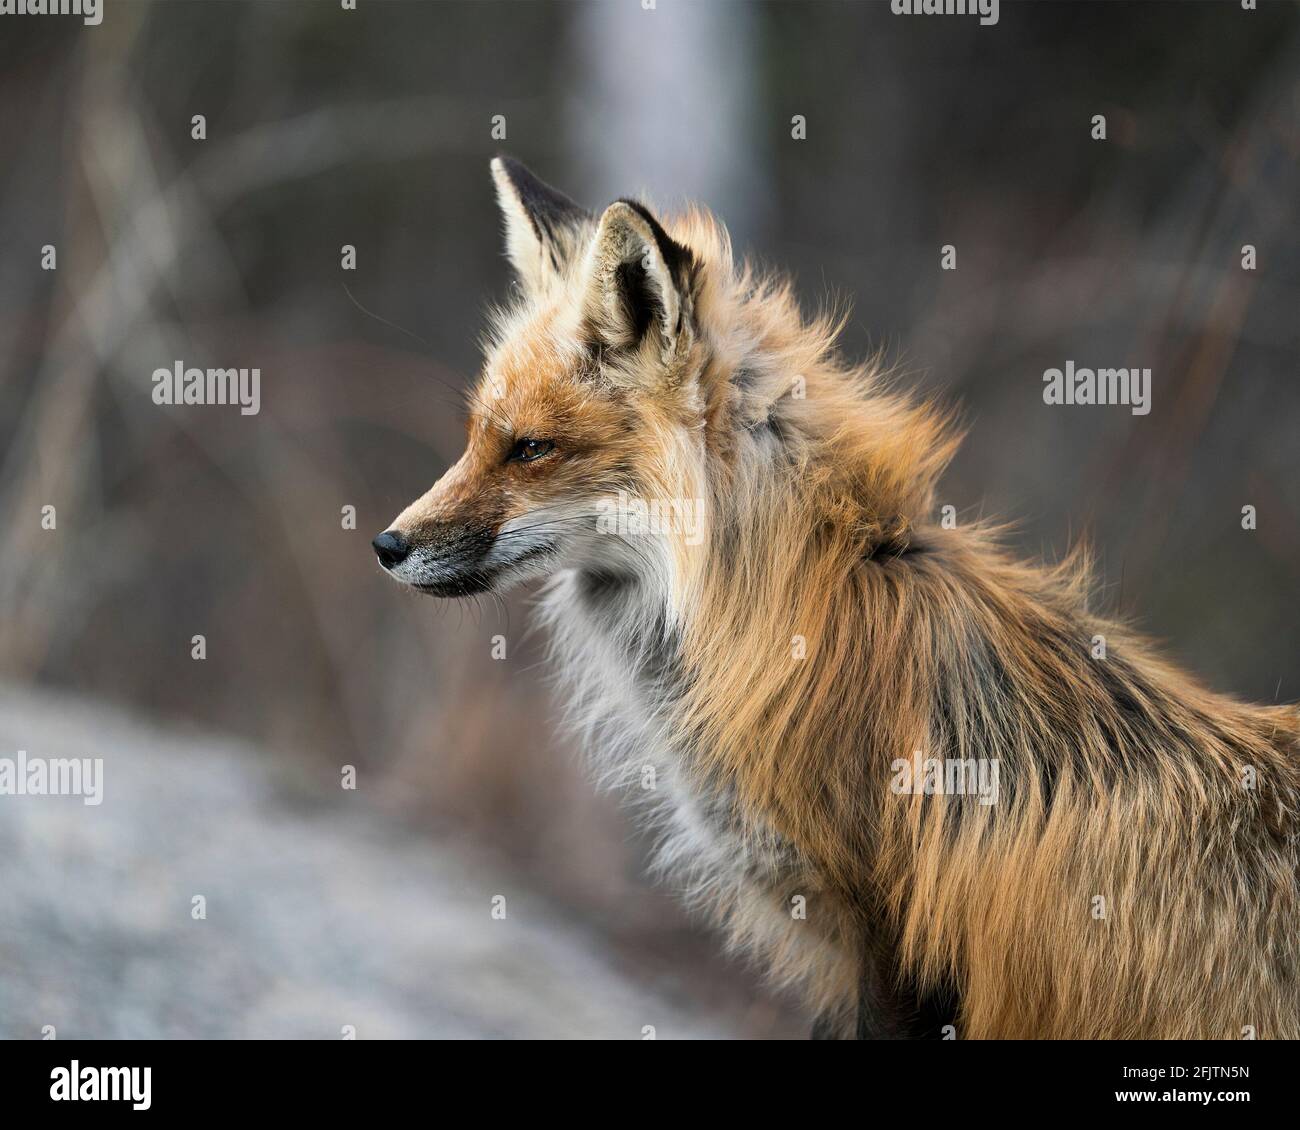 Vista laterale del profilo in primo piano della testa della volpe rossa con sfondo sfocato nel suo ambiente e habitat. Immagine. Verticale. Foto. Colpo di testa. Immagine FOX. Foto Stock